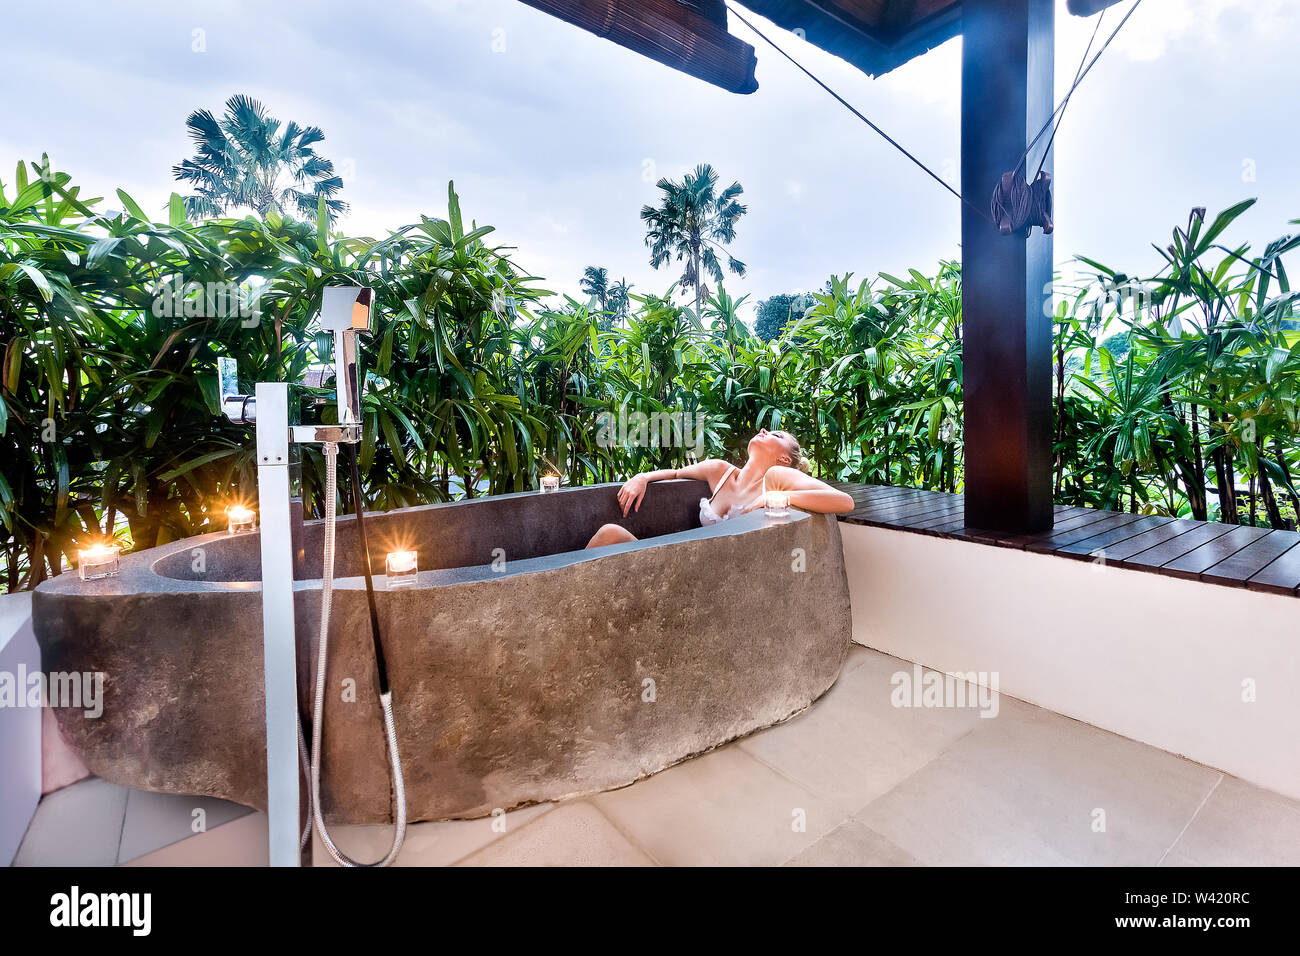 Jeune femme est de prendre un repos dans un bain à remous en pierre avec bougie clignotante autour d'elle et couvert de plantes vertes Banque D'Images